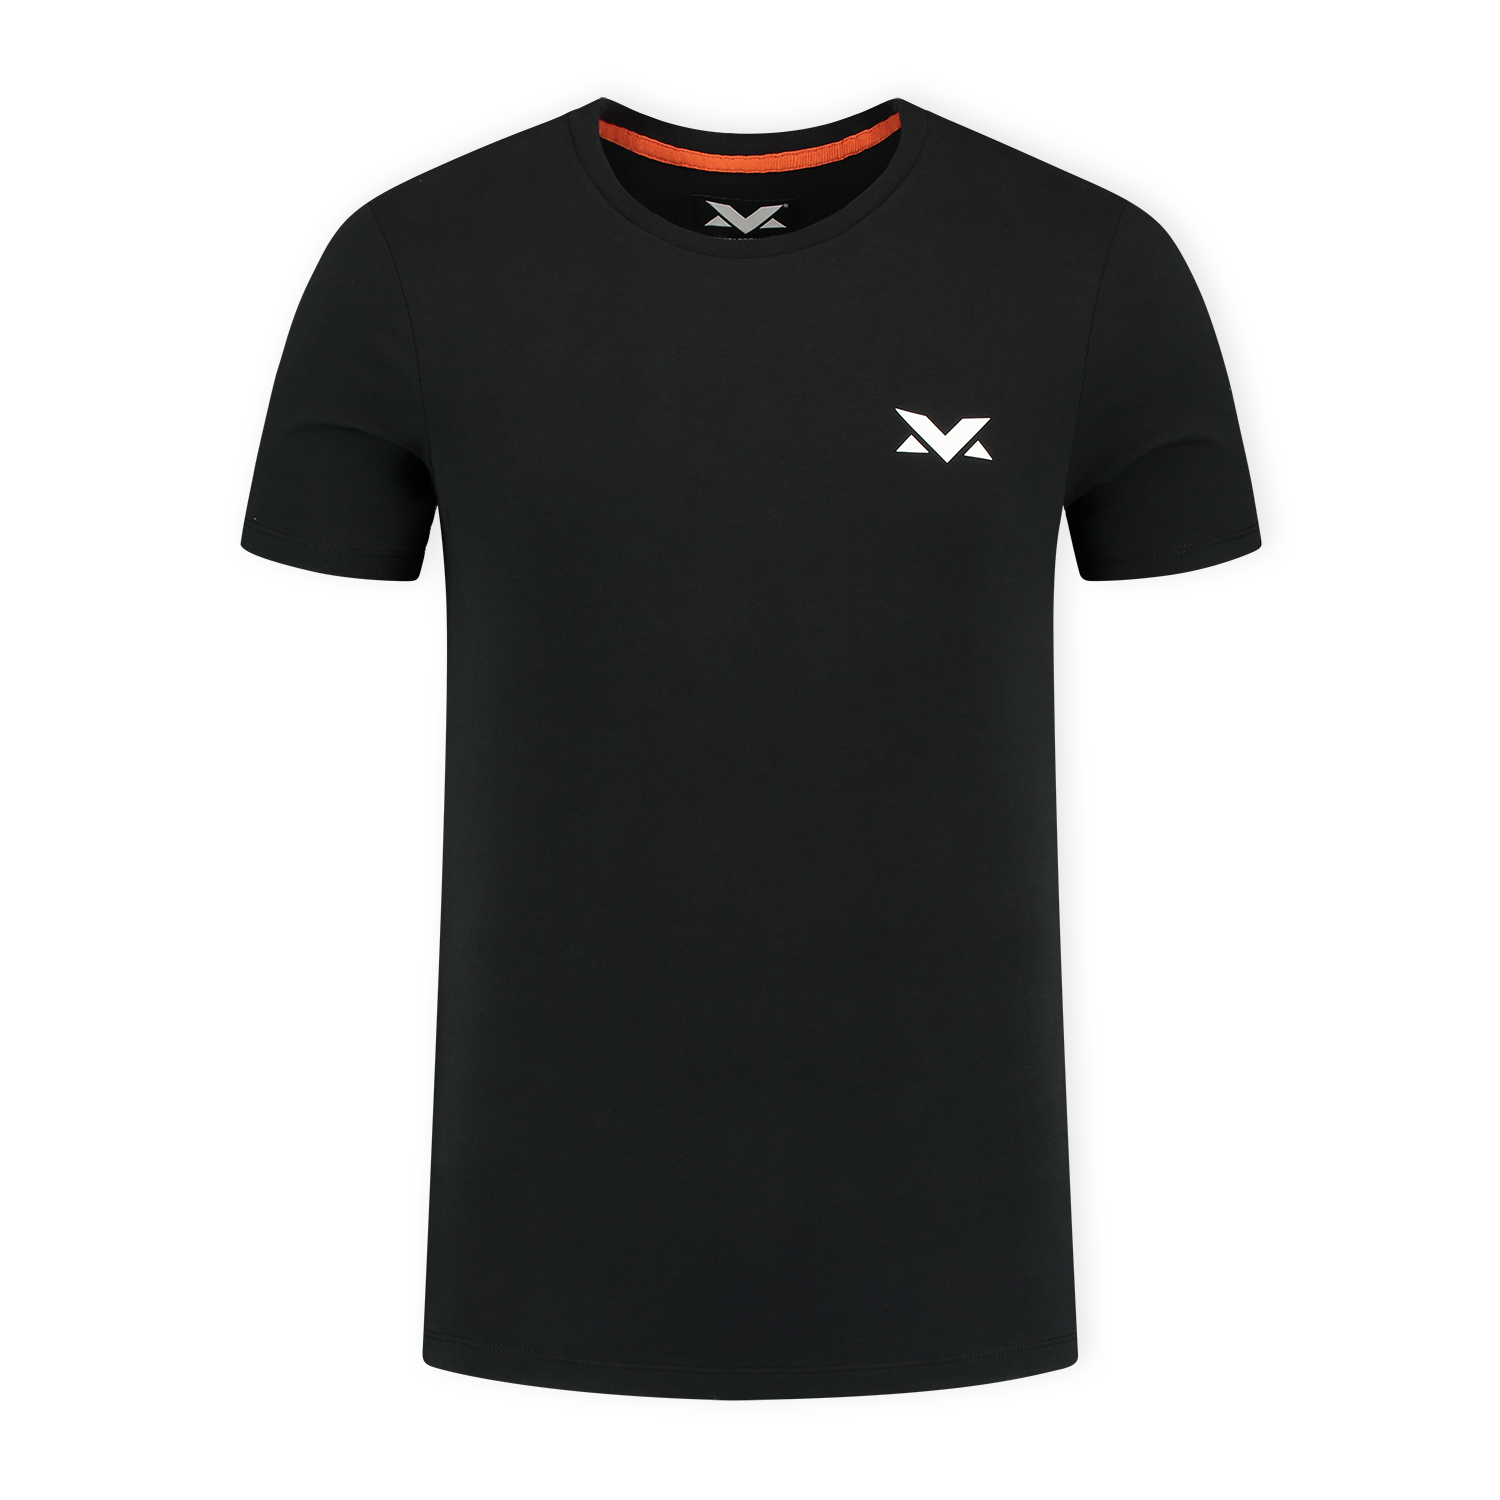 MV T-shirt The Limits - Zwart - L - Max Verstappen